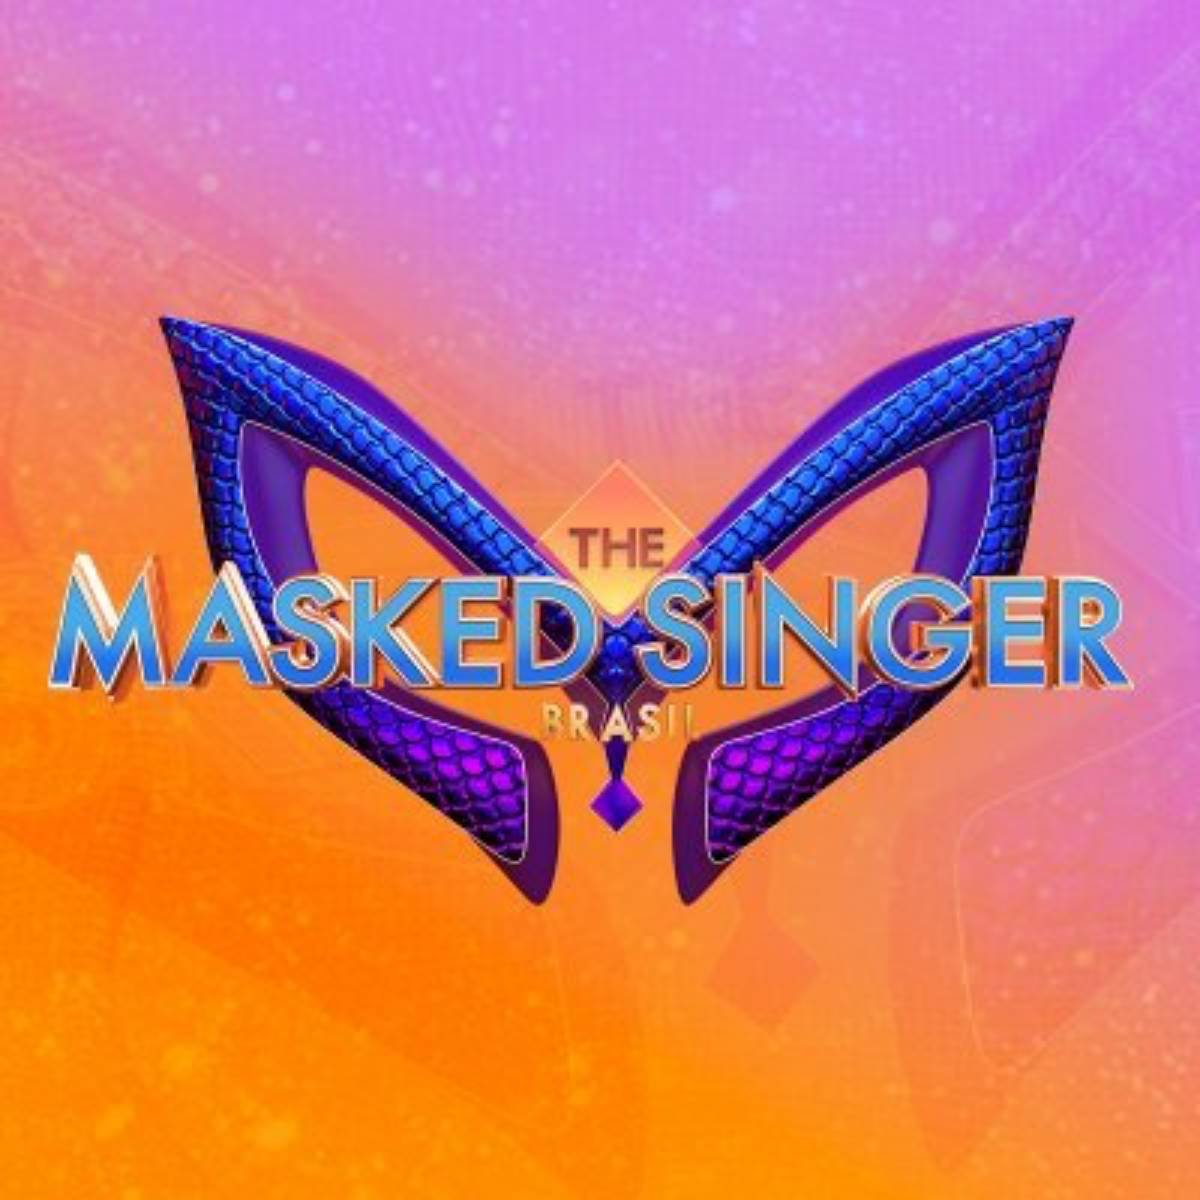 The Masked Singer Brasil 29/01/2023 Mais mascarados se apresentam no